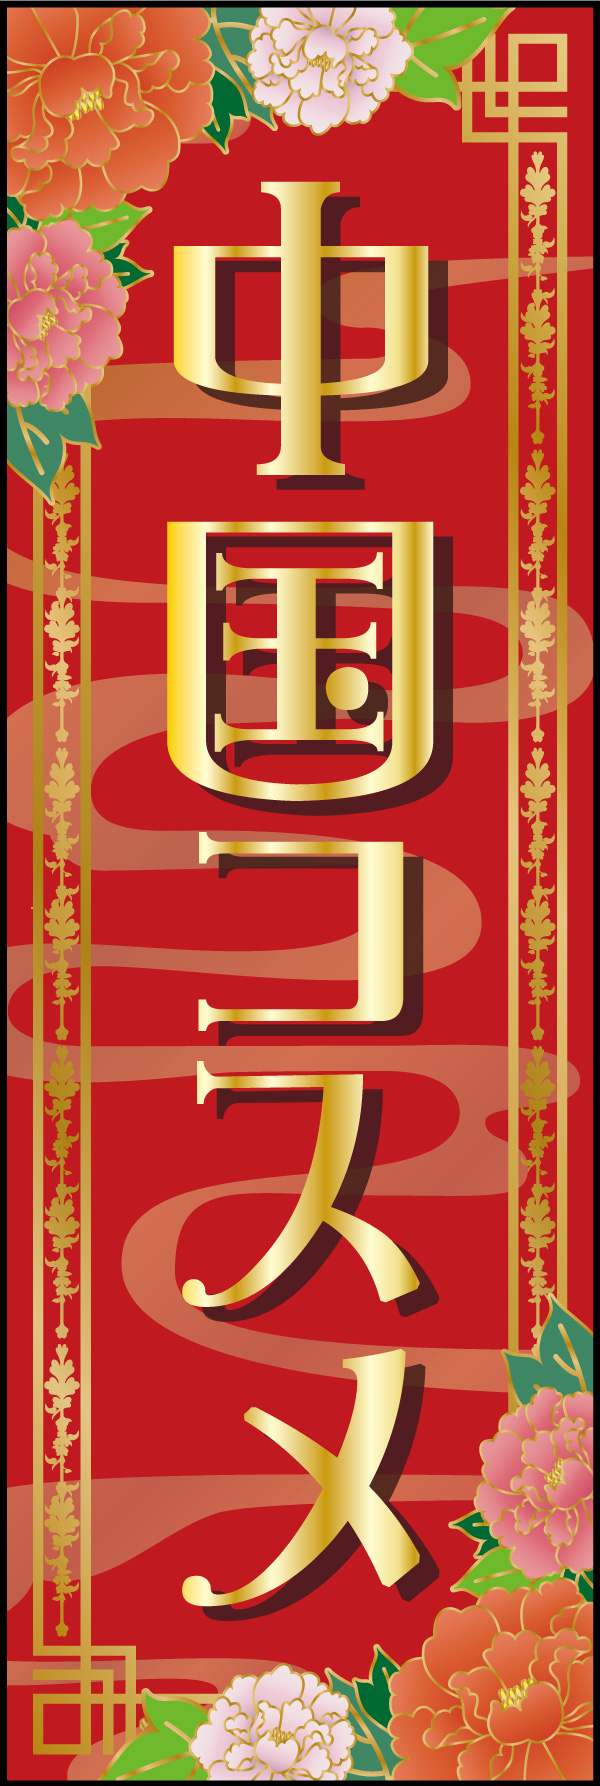 中国コスメ 01 「中国コスメ 」の幟です。華やかさで目を引く幟を目指しました。(A.H)